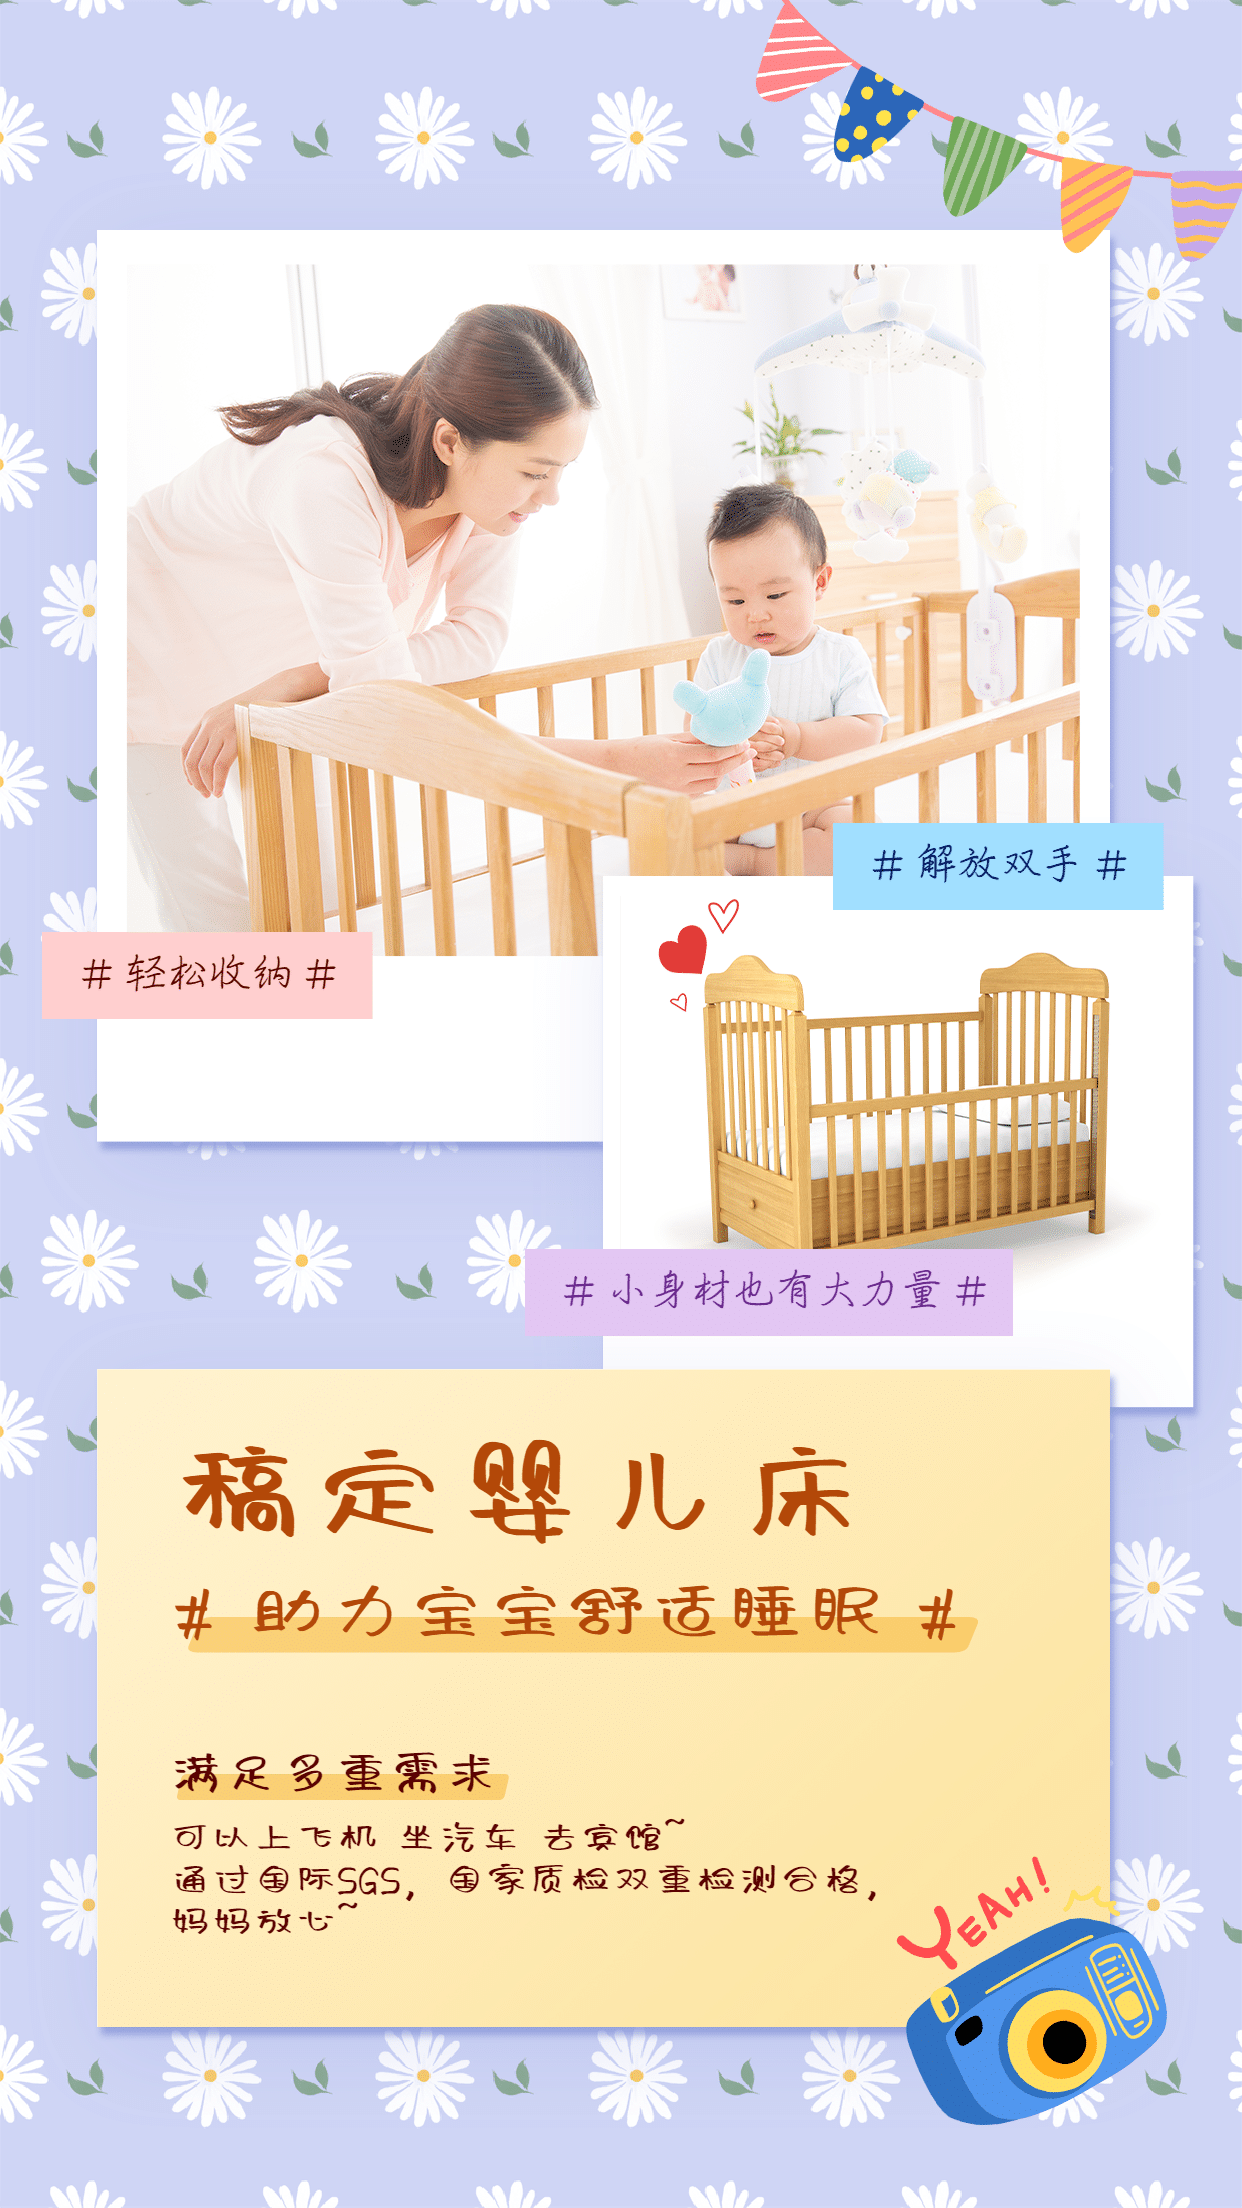 产品展示母婴亲子产品婴儿床手绘预览效果